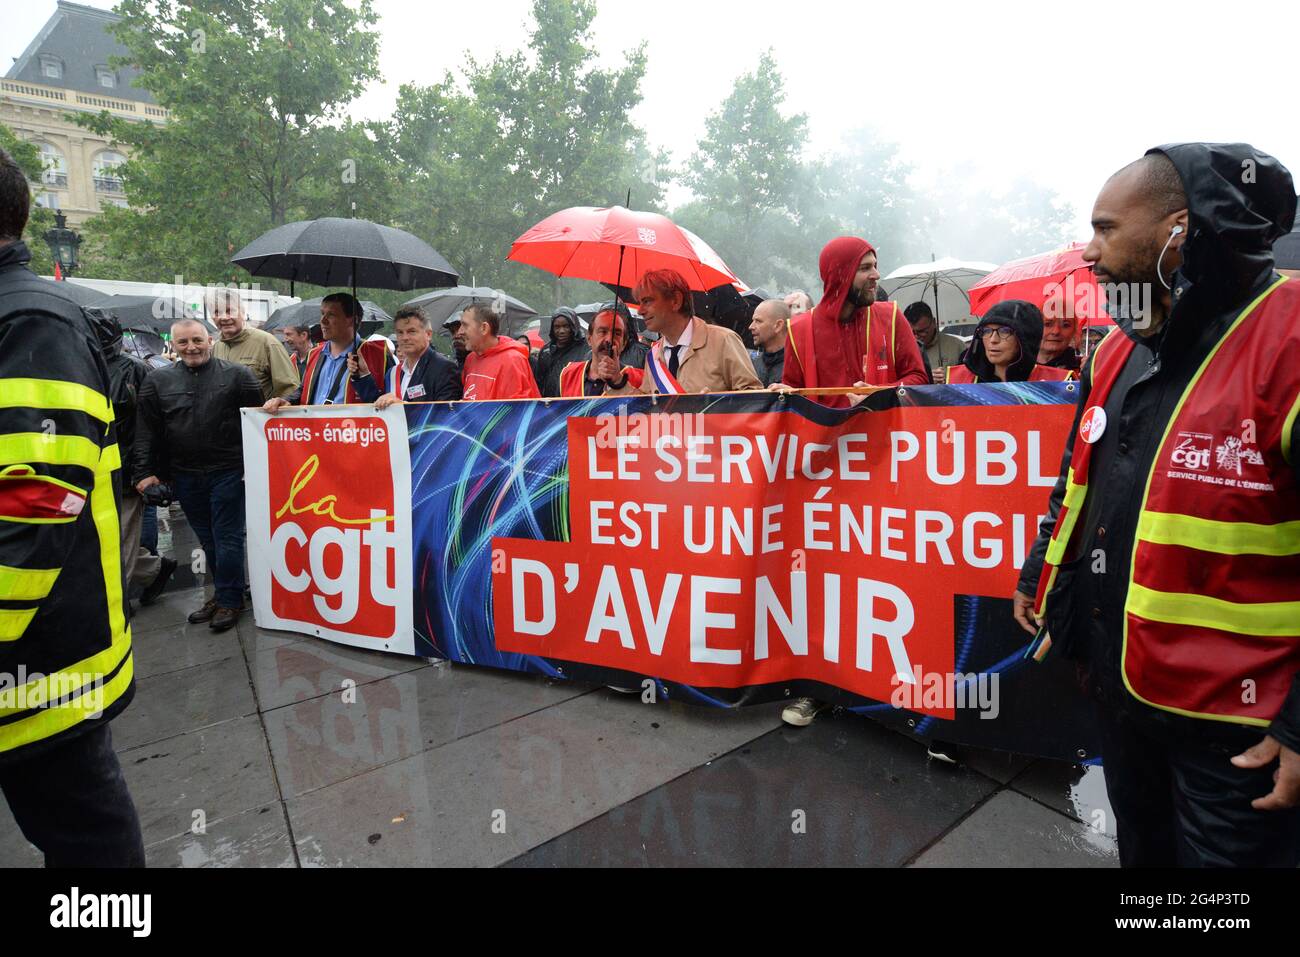 Paris-Demo für einen öffentlichen Energiedienst. Hunderte von Demonstranten trotzten dem Regen vom Place de la Nation, um Nein zum Projekt "Hercule" zu sagen Stockfoto